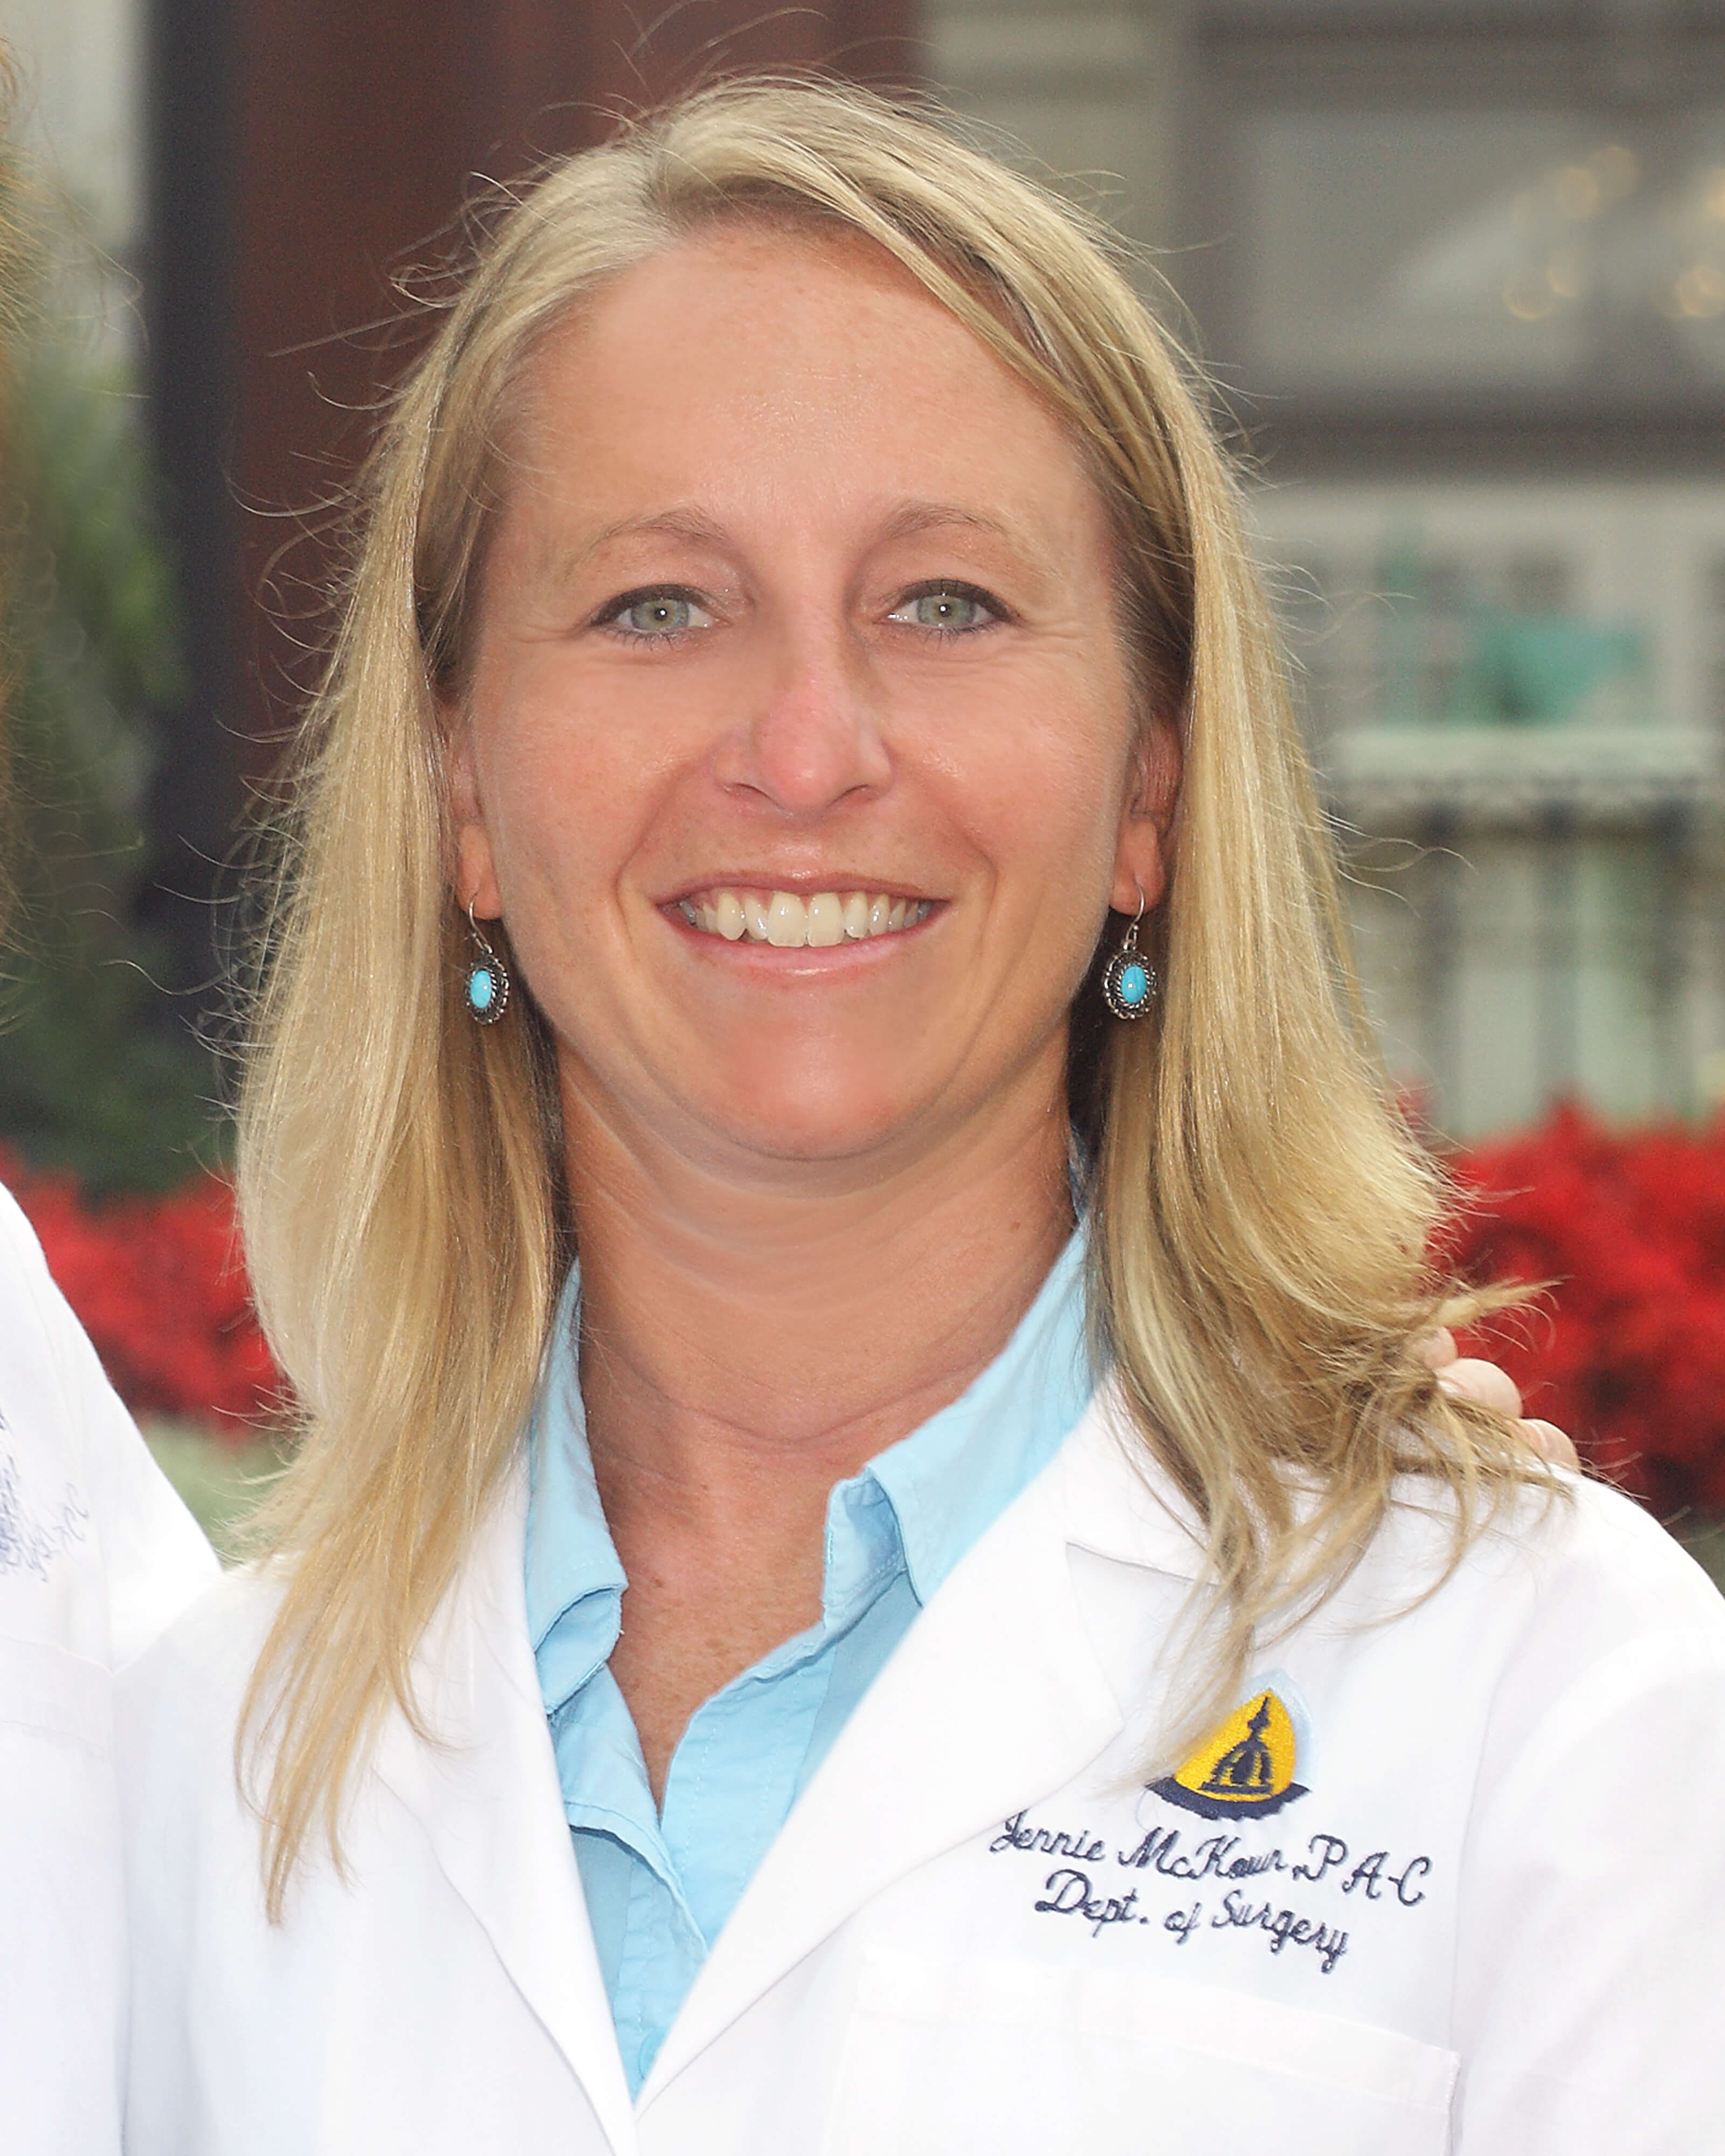 Jennie McKown, M.S.H.S., PA-C, Physician Assistant